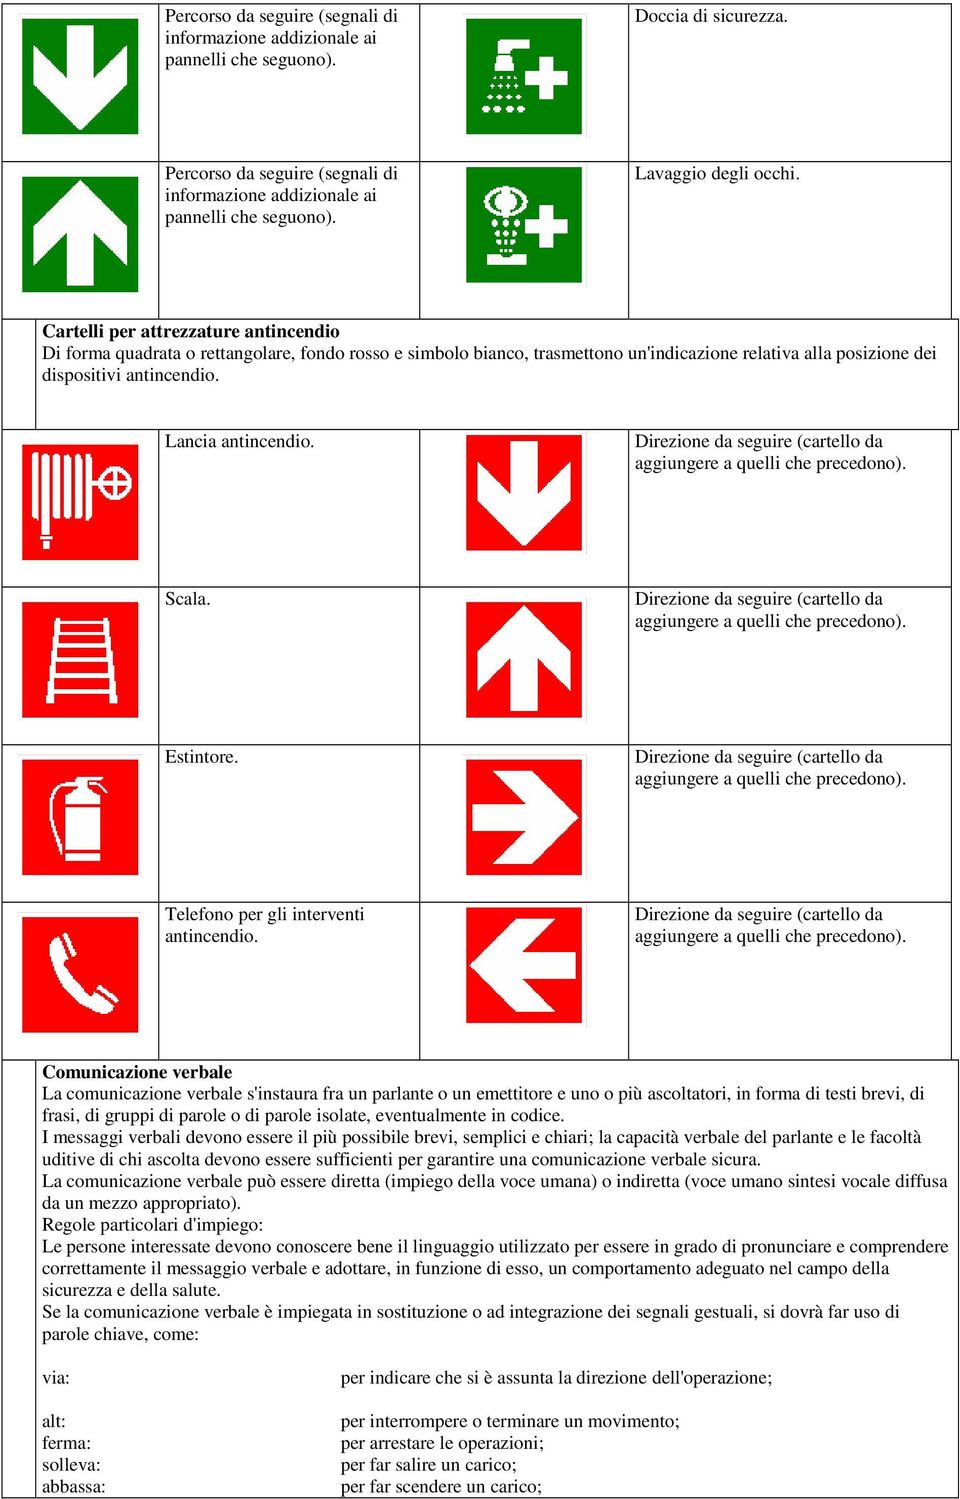 Cartelli per attrezzature antincendio Di forma quadrata o rettangolare, fondo rosso e simbolo bianco, trasmettono un'indicazione relativa alla posizione dei dispositivi antincendio.